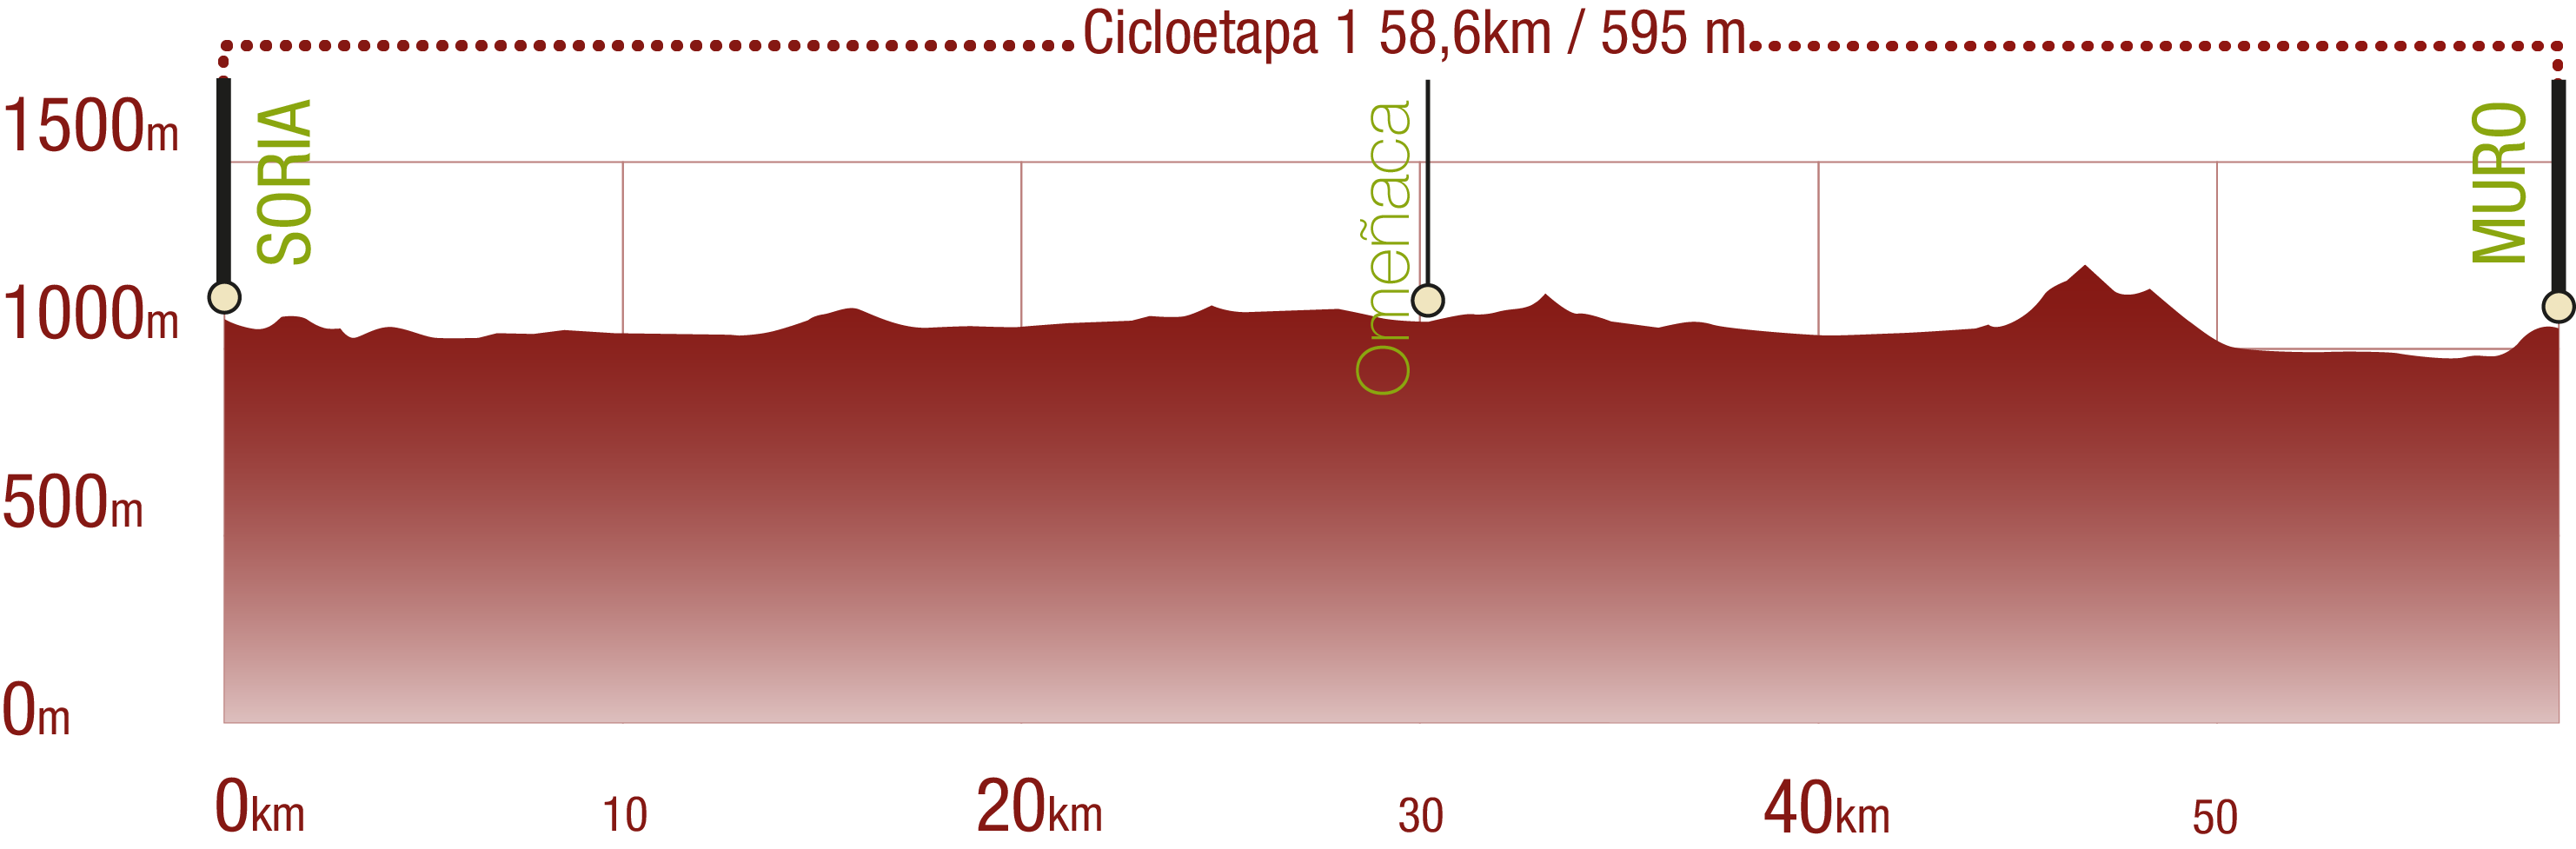 Perfil 
Perfil de la Cicloetapa 1 del CN del Agua Soriano. Camino Antonino: 58,6 km / Desnivel de subida 595 m

